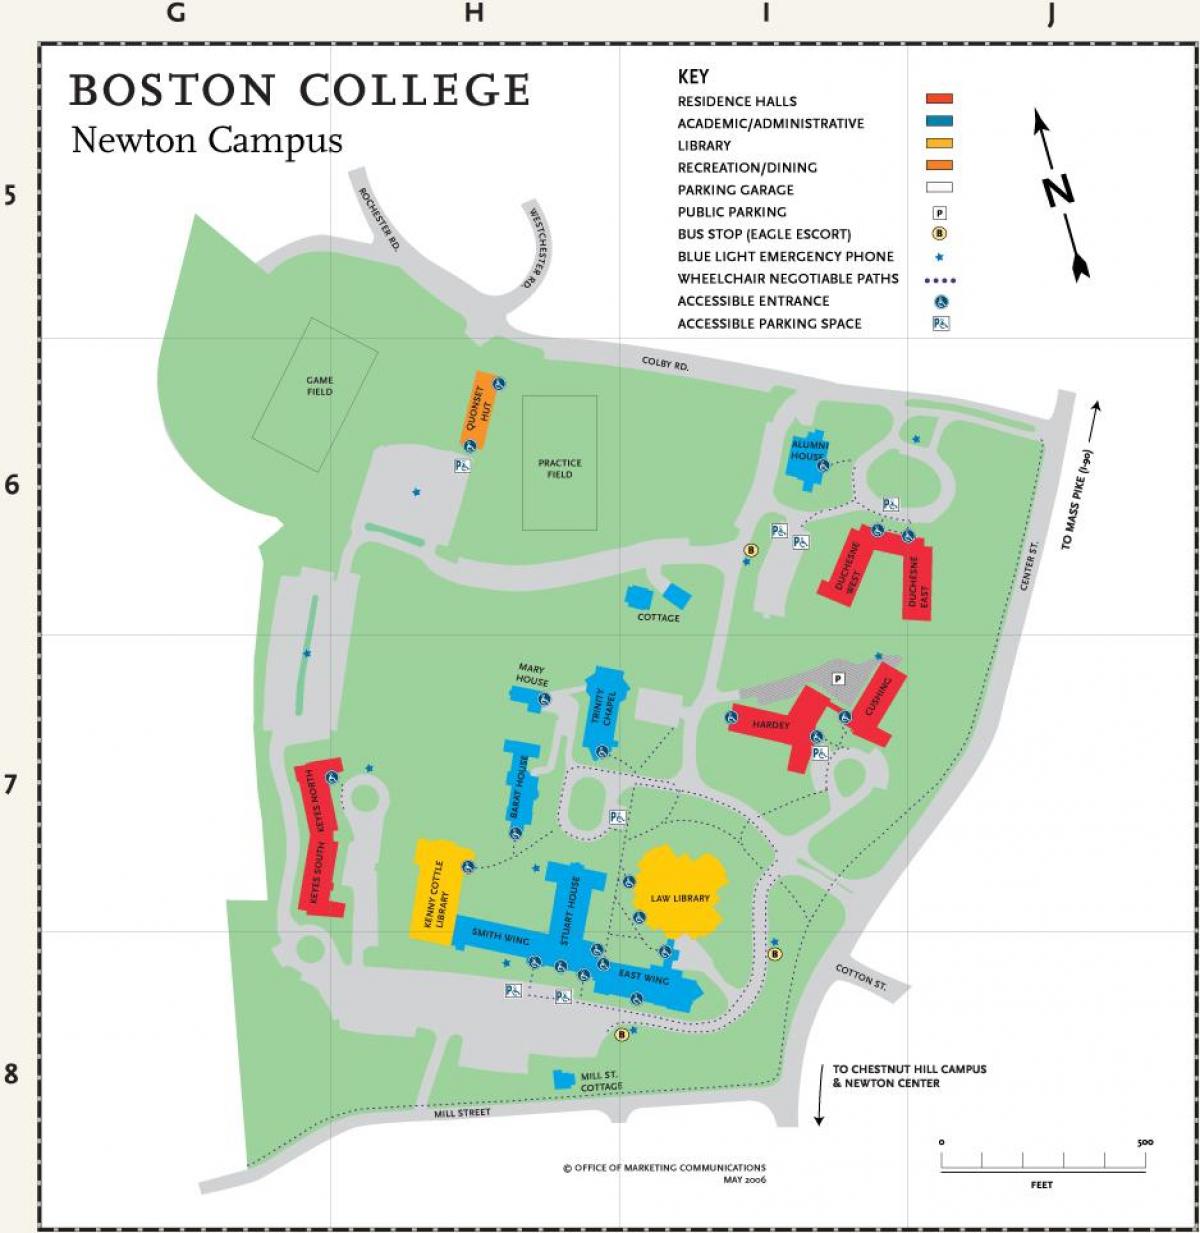 แผนที่ของวิทยาลัยบอสตัน